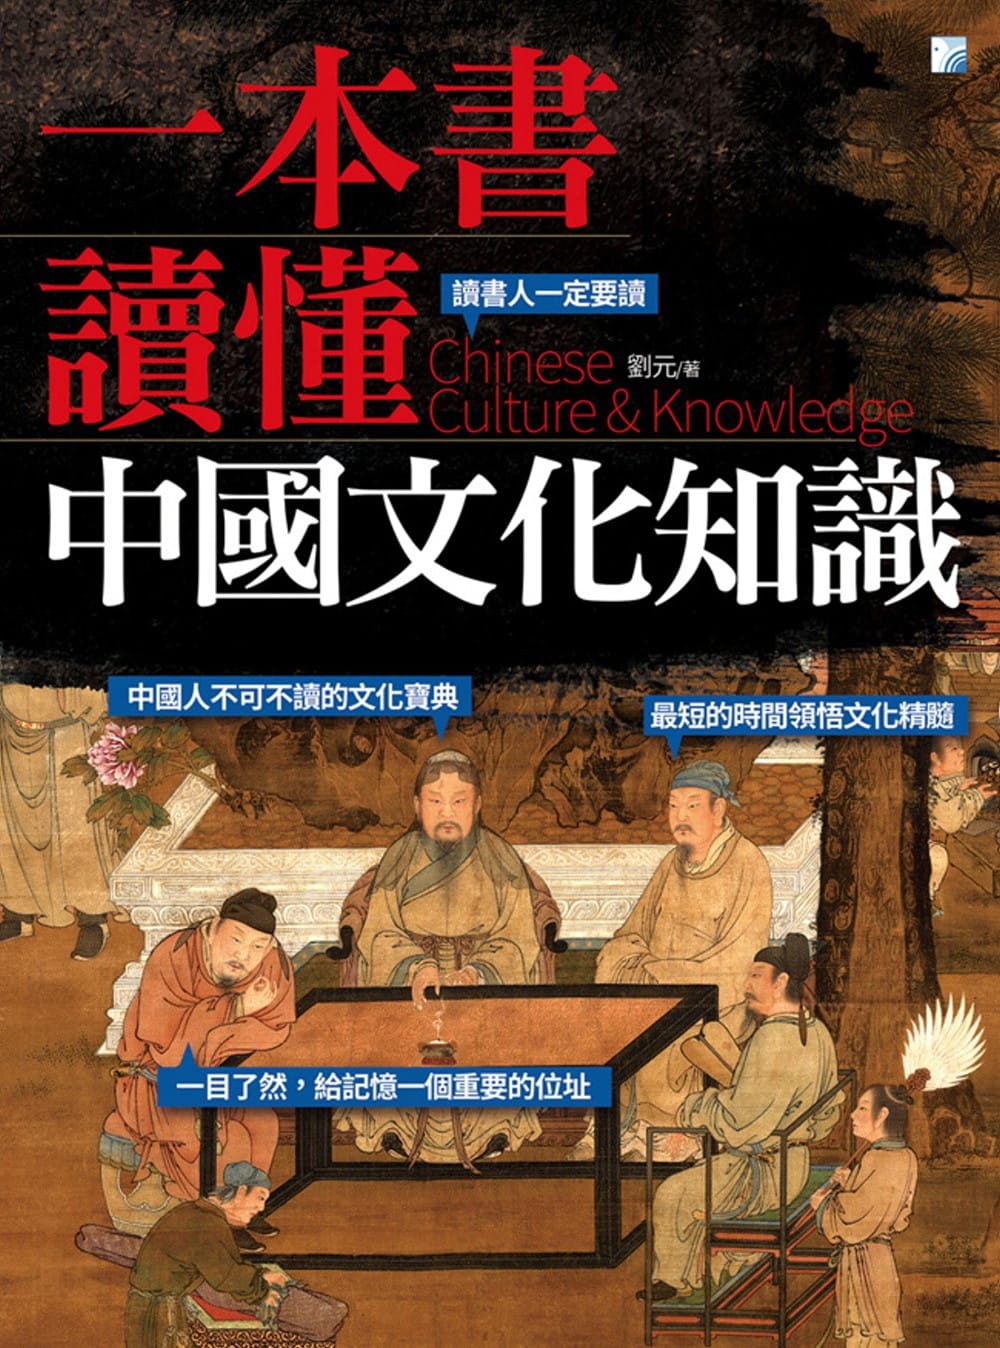 预售 刘元 一本书读懂中国文化知识 海鸽